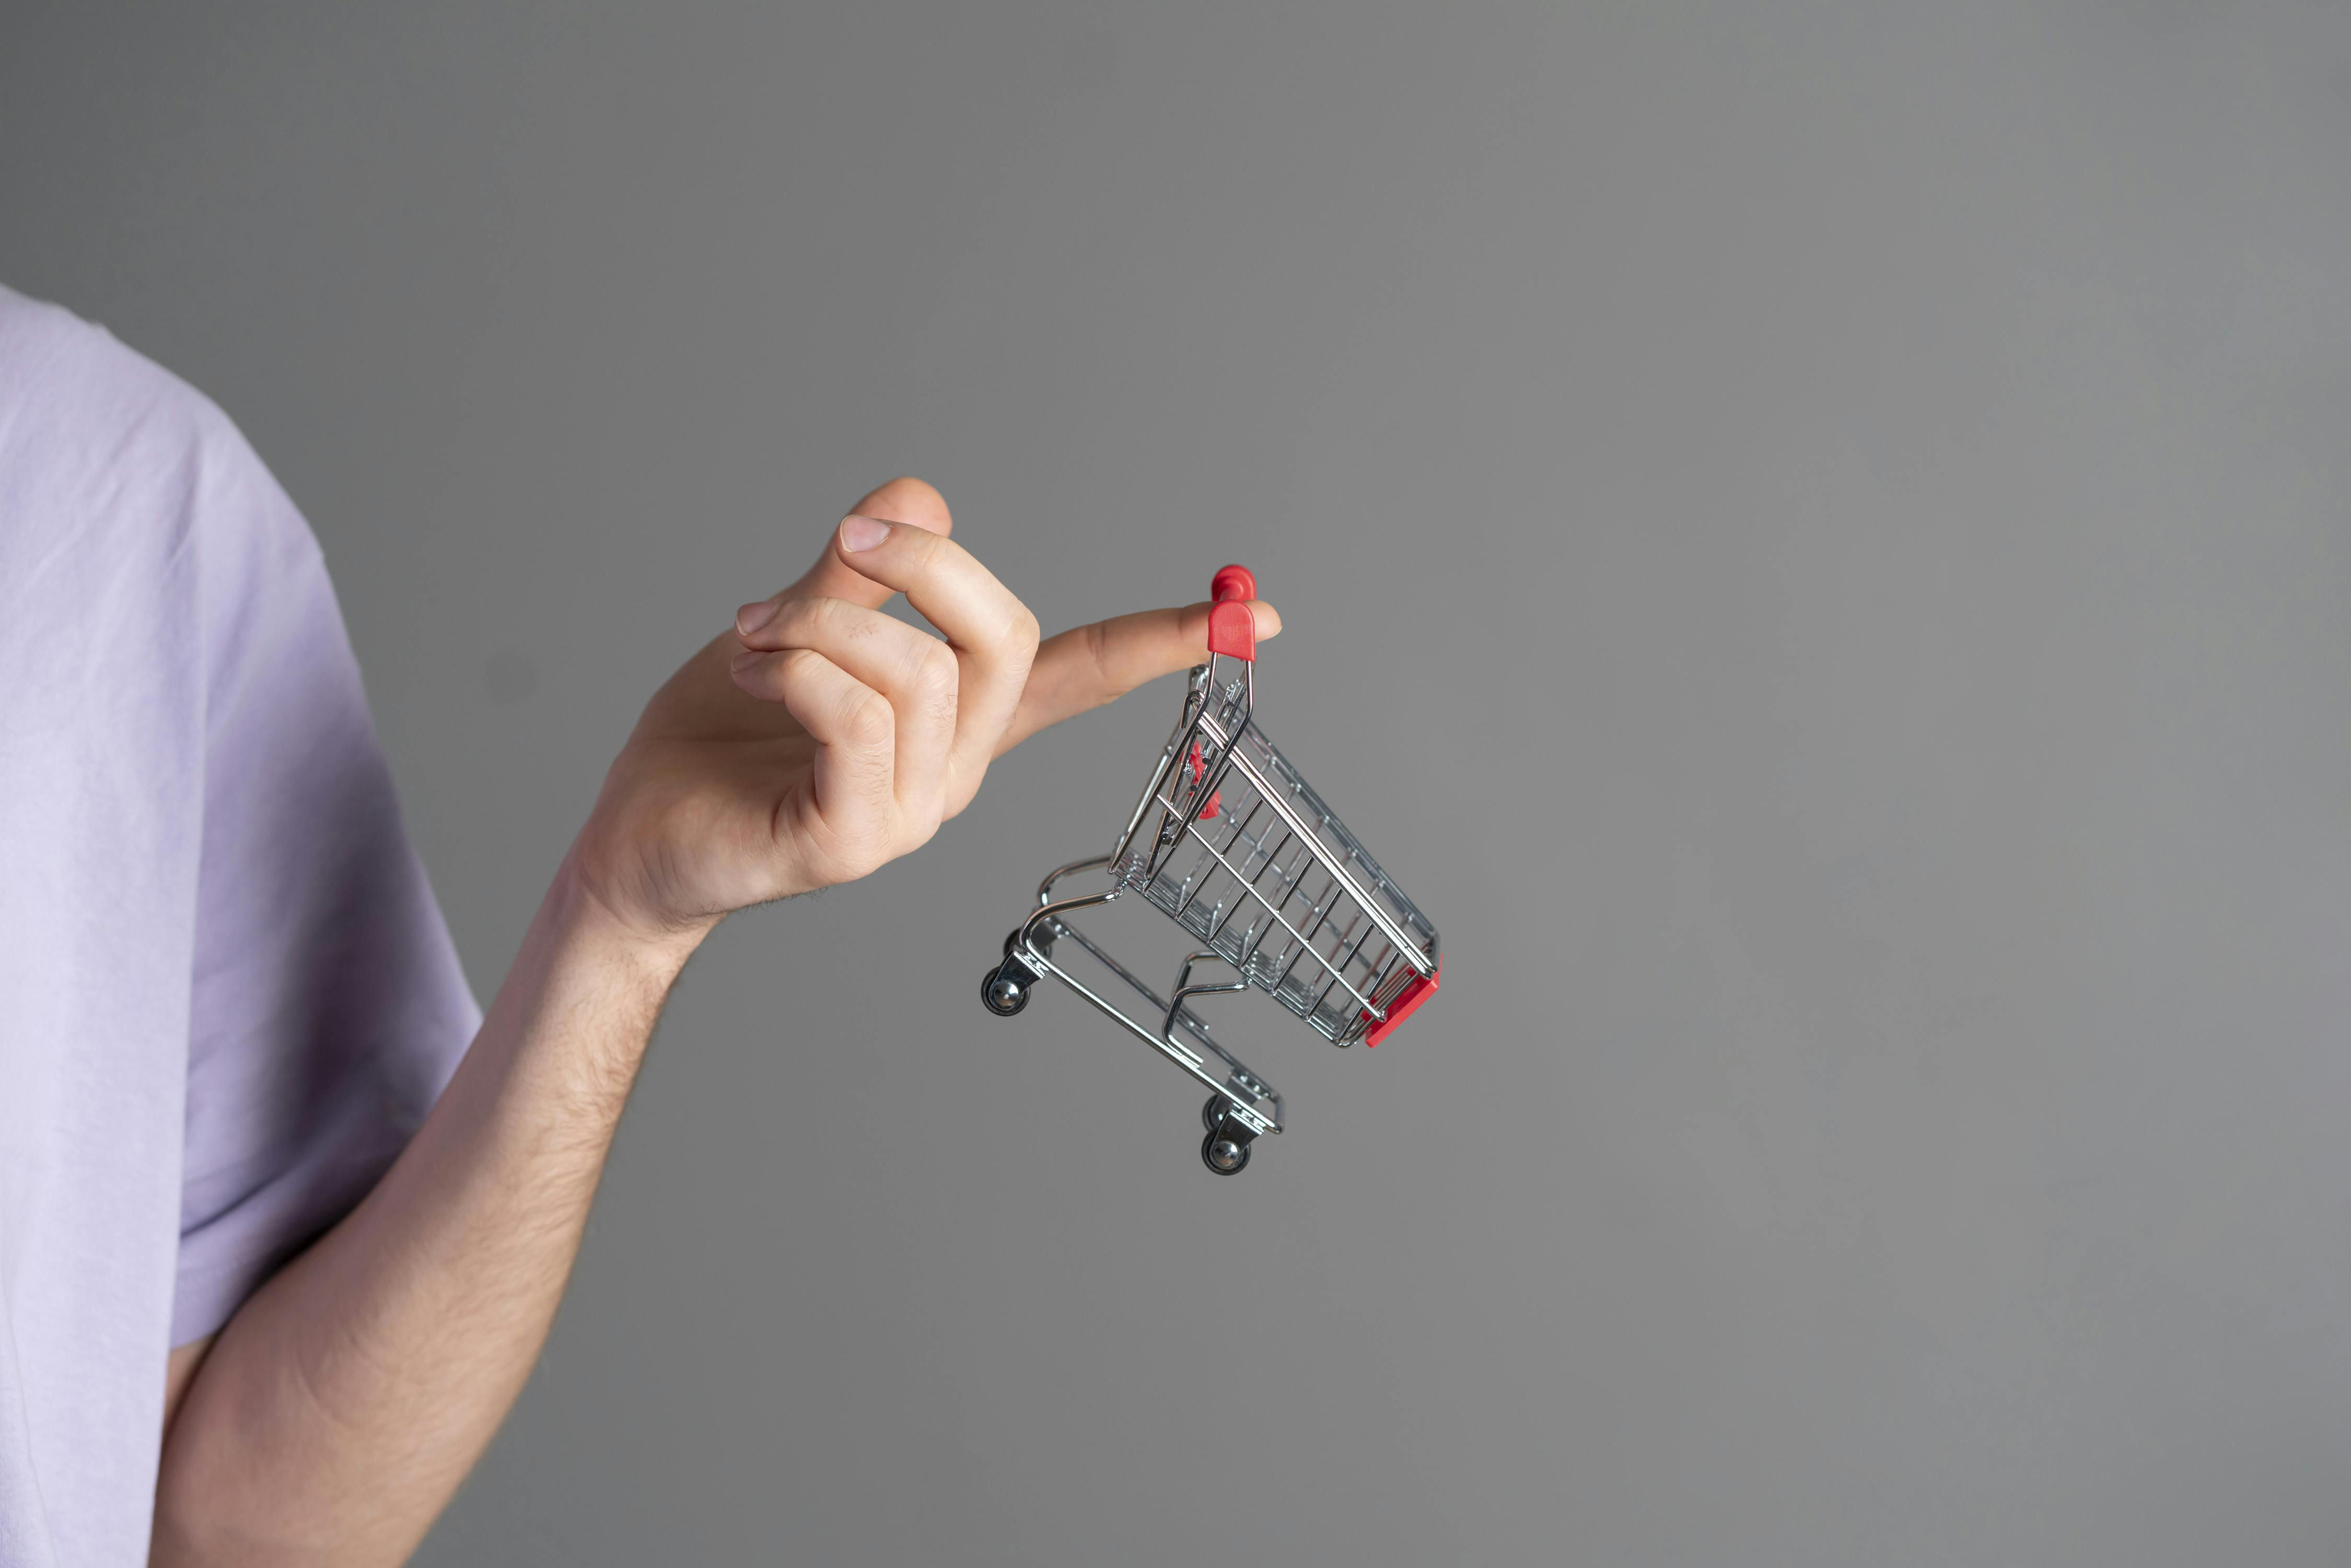  a hand holding a miniature shopping cart